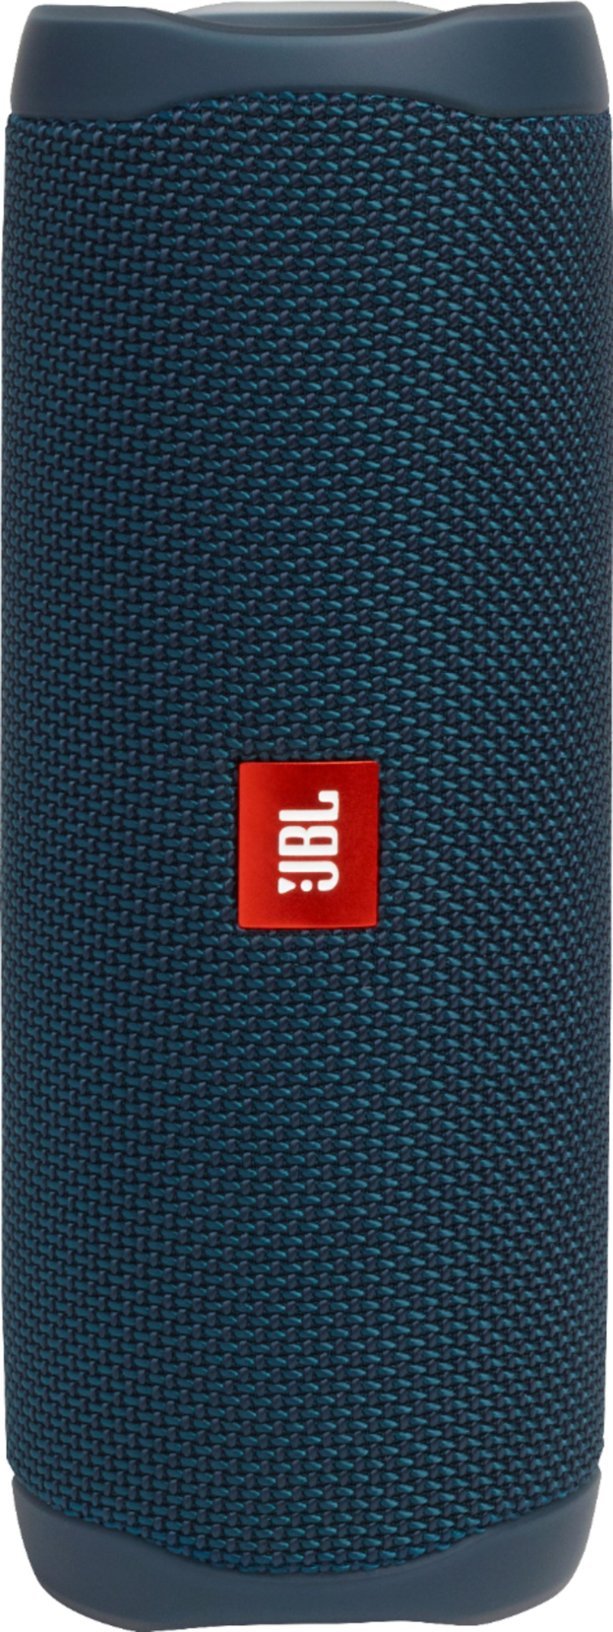 JBL Flip 5 Waterproof Wireless Portable Bluetooth Speaker - TT - Ocean Blue (Certified Refurbished)